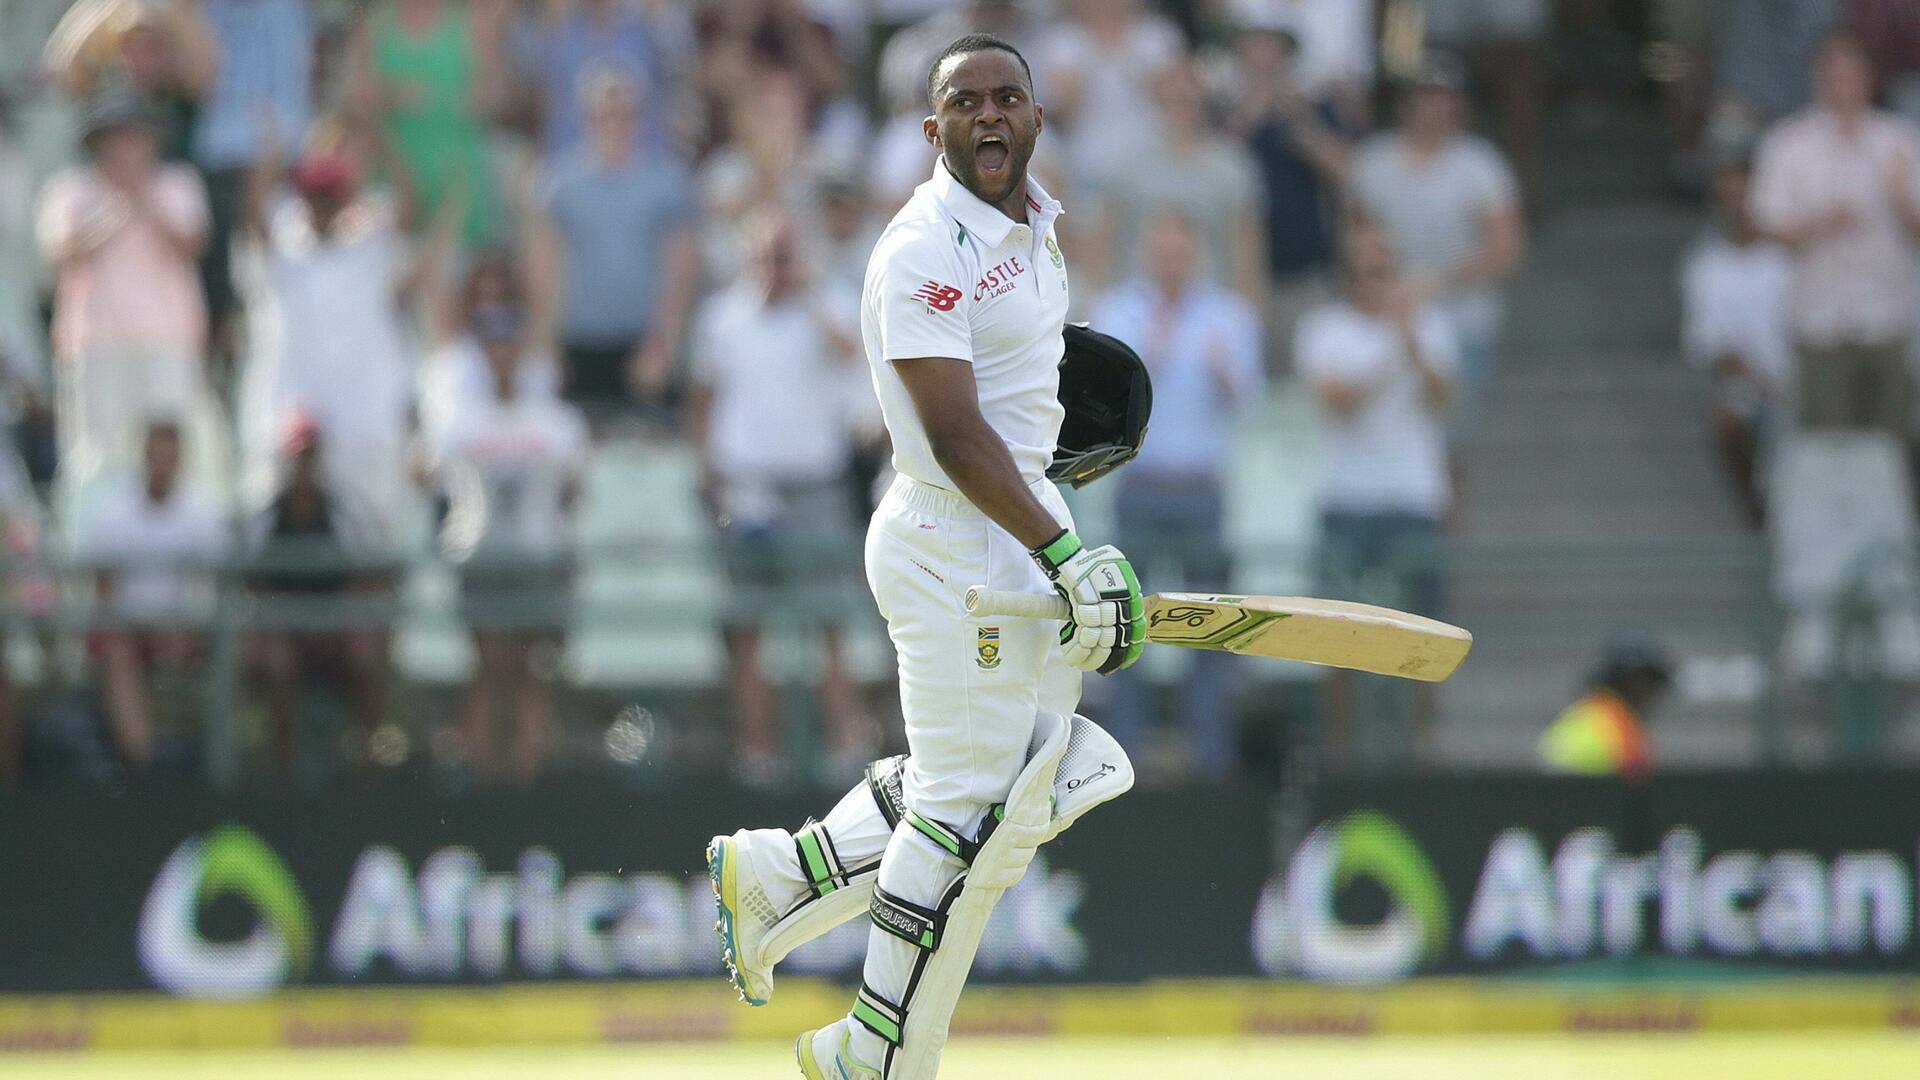 दक्षिण अफ्रीका बनाम वेस्टइंडीज: तेम्बा बावुमा ने जमाया टेस्ट करियर का दूसरा शतक, जानिए आंकड़े 